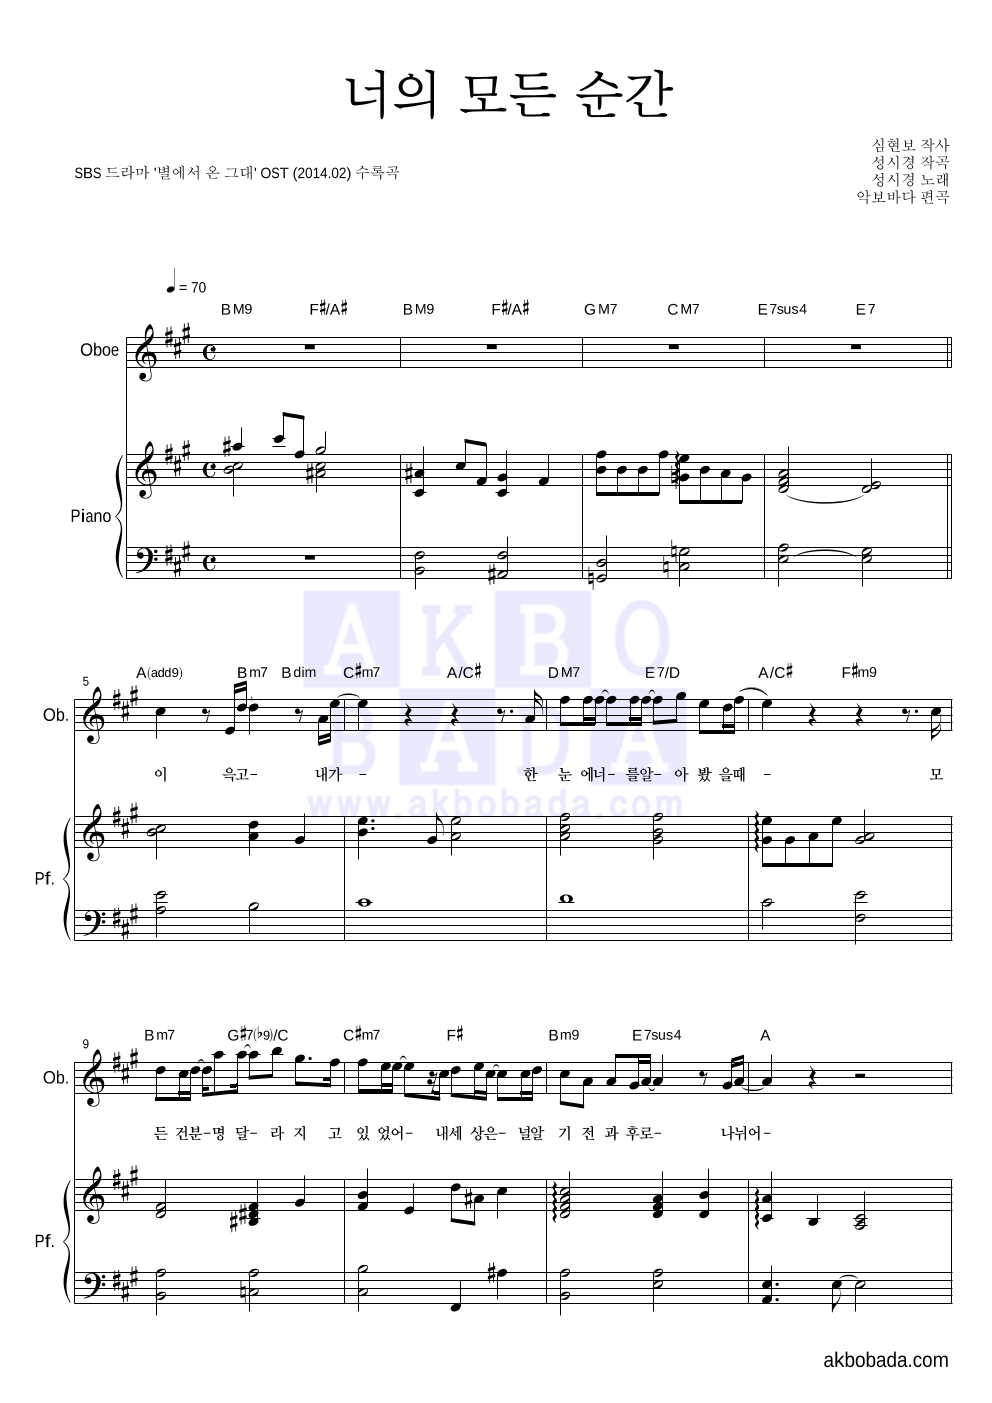 성시경 - 너의 모든 순간 (Piano Ver.) 오보에&피아노 악보 